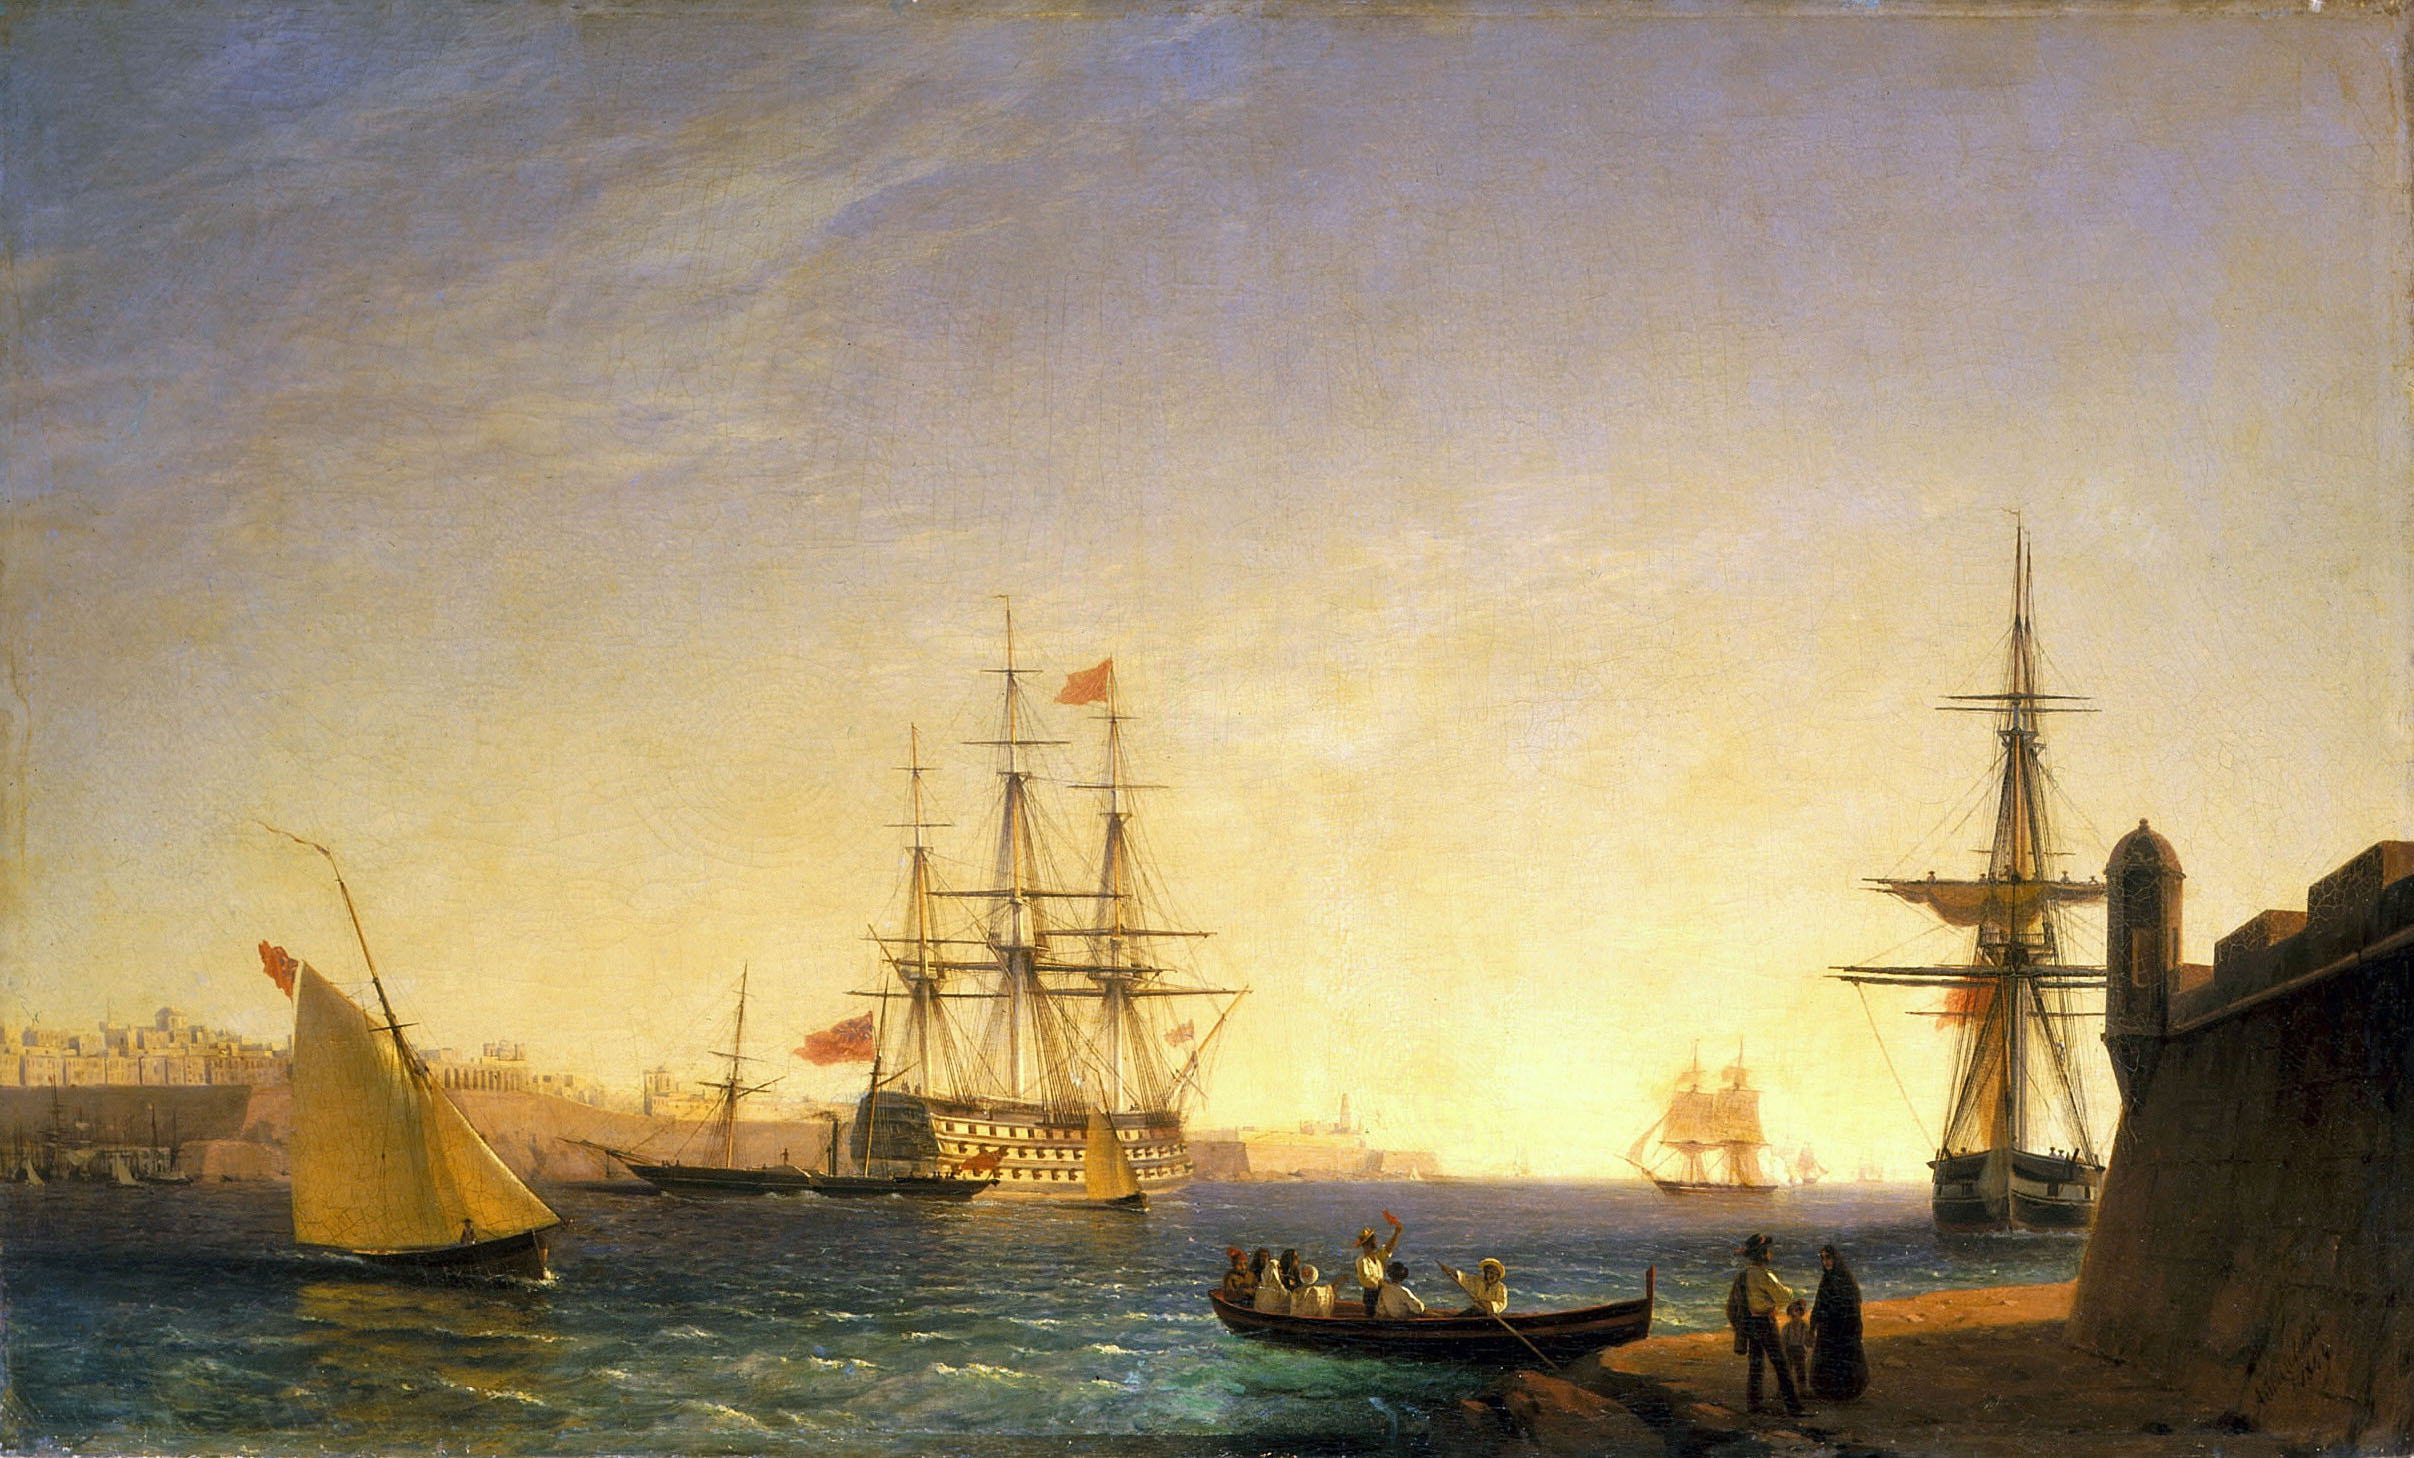 Айвазовский. Порт ла Валетта на острове Мальта. 1844